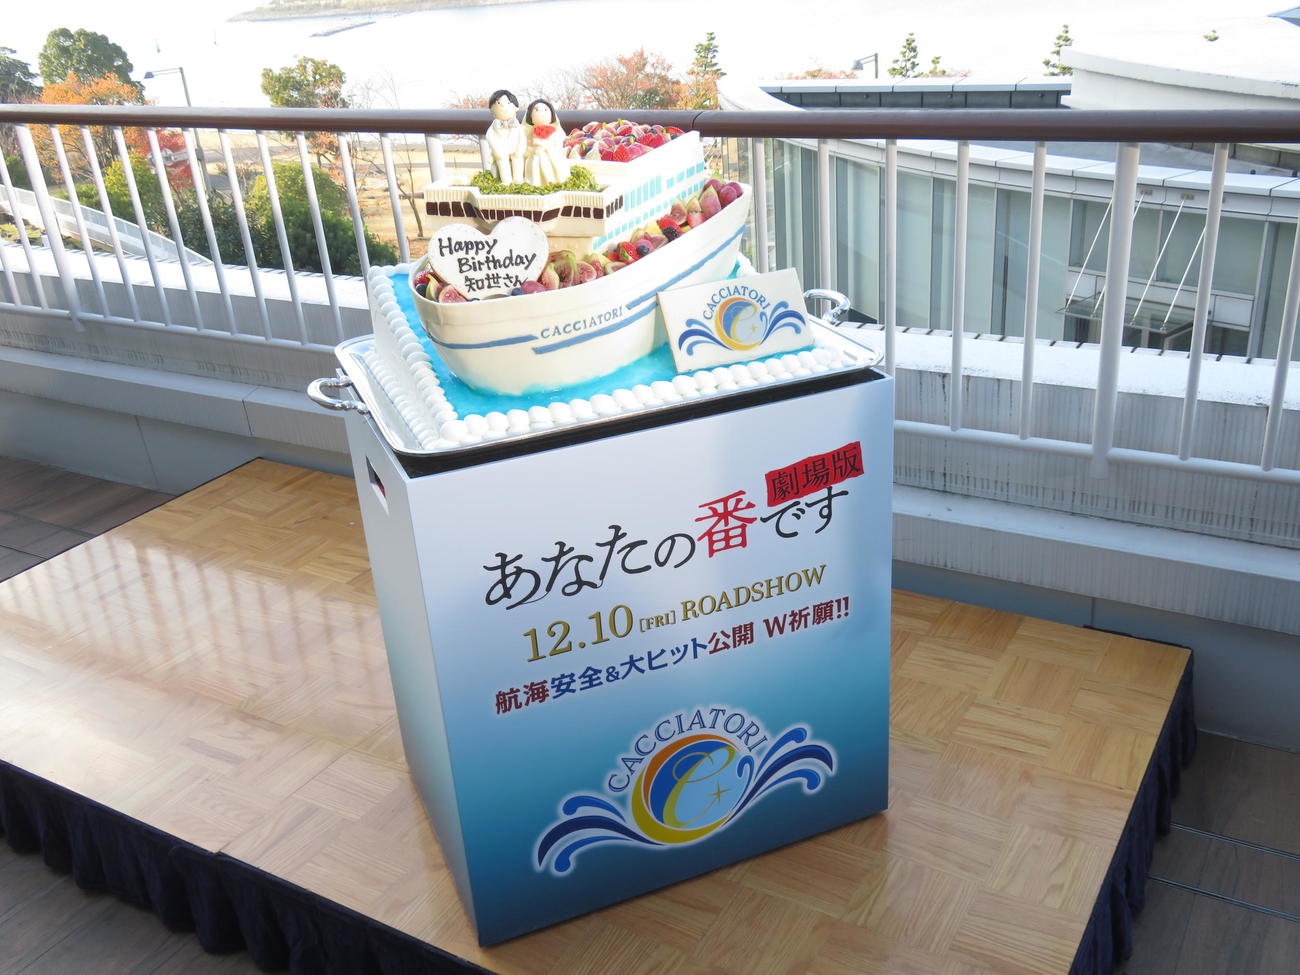 原田知世の誕生日を祝うケーキは豪華客船の形をしていた（撮影・横山慧）